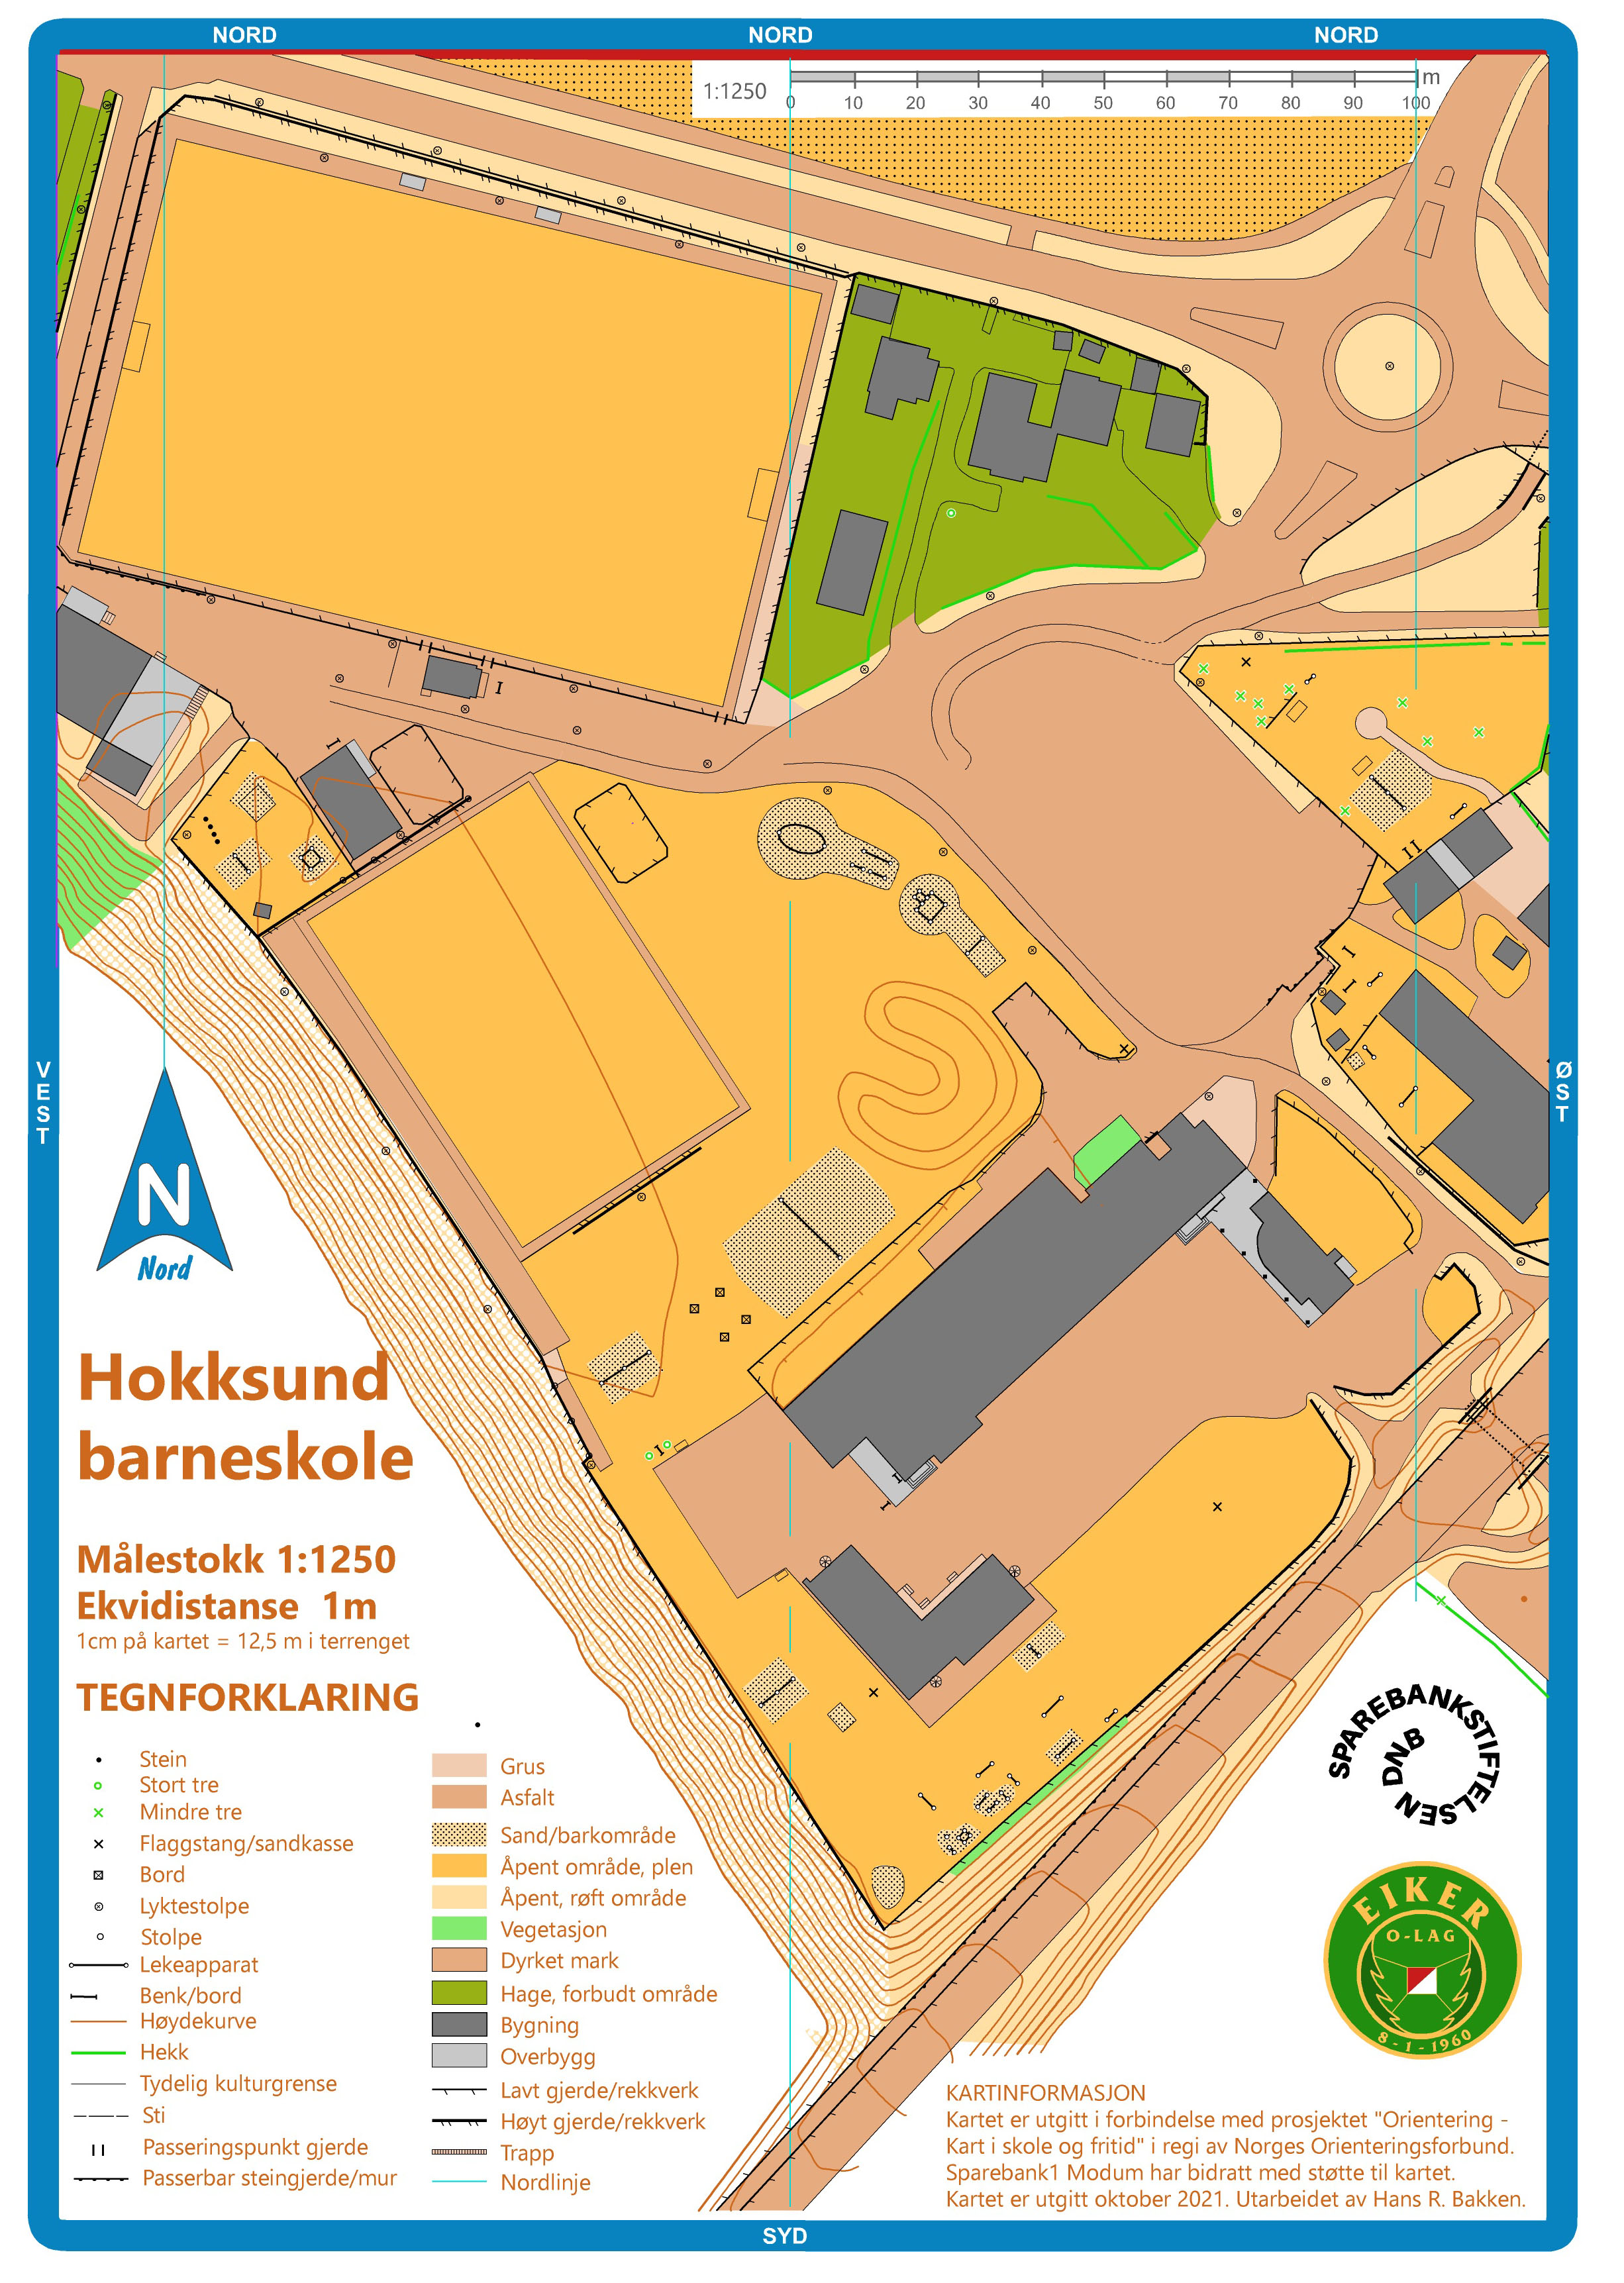 Hokksund barneskole (01.10.2021)